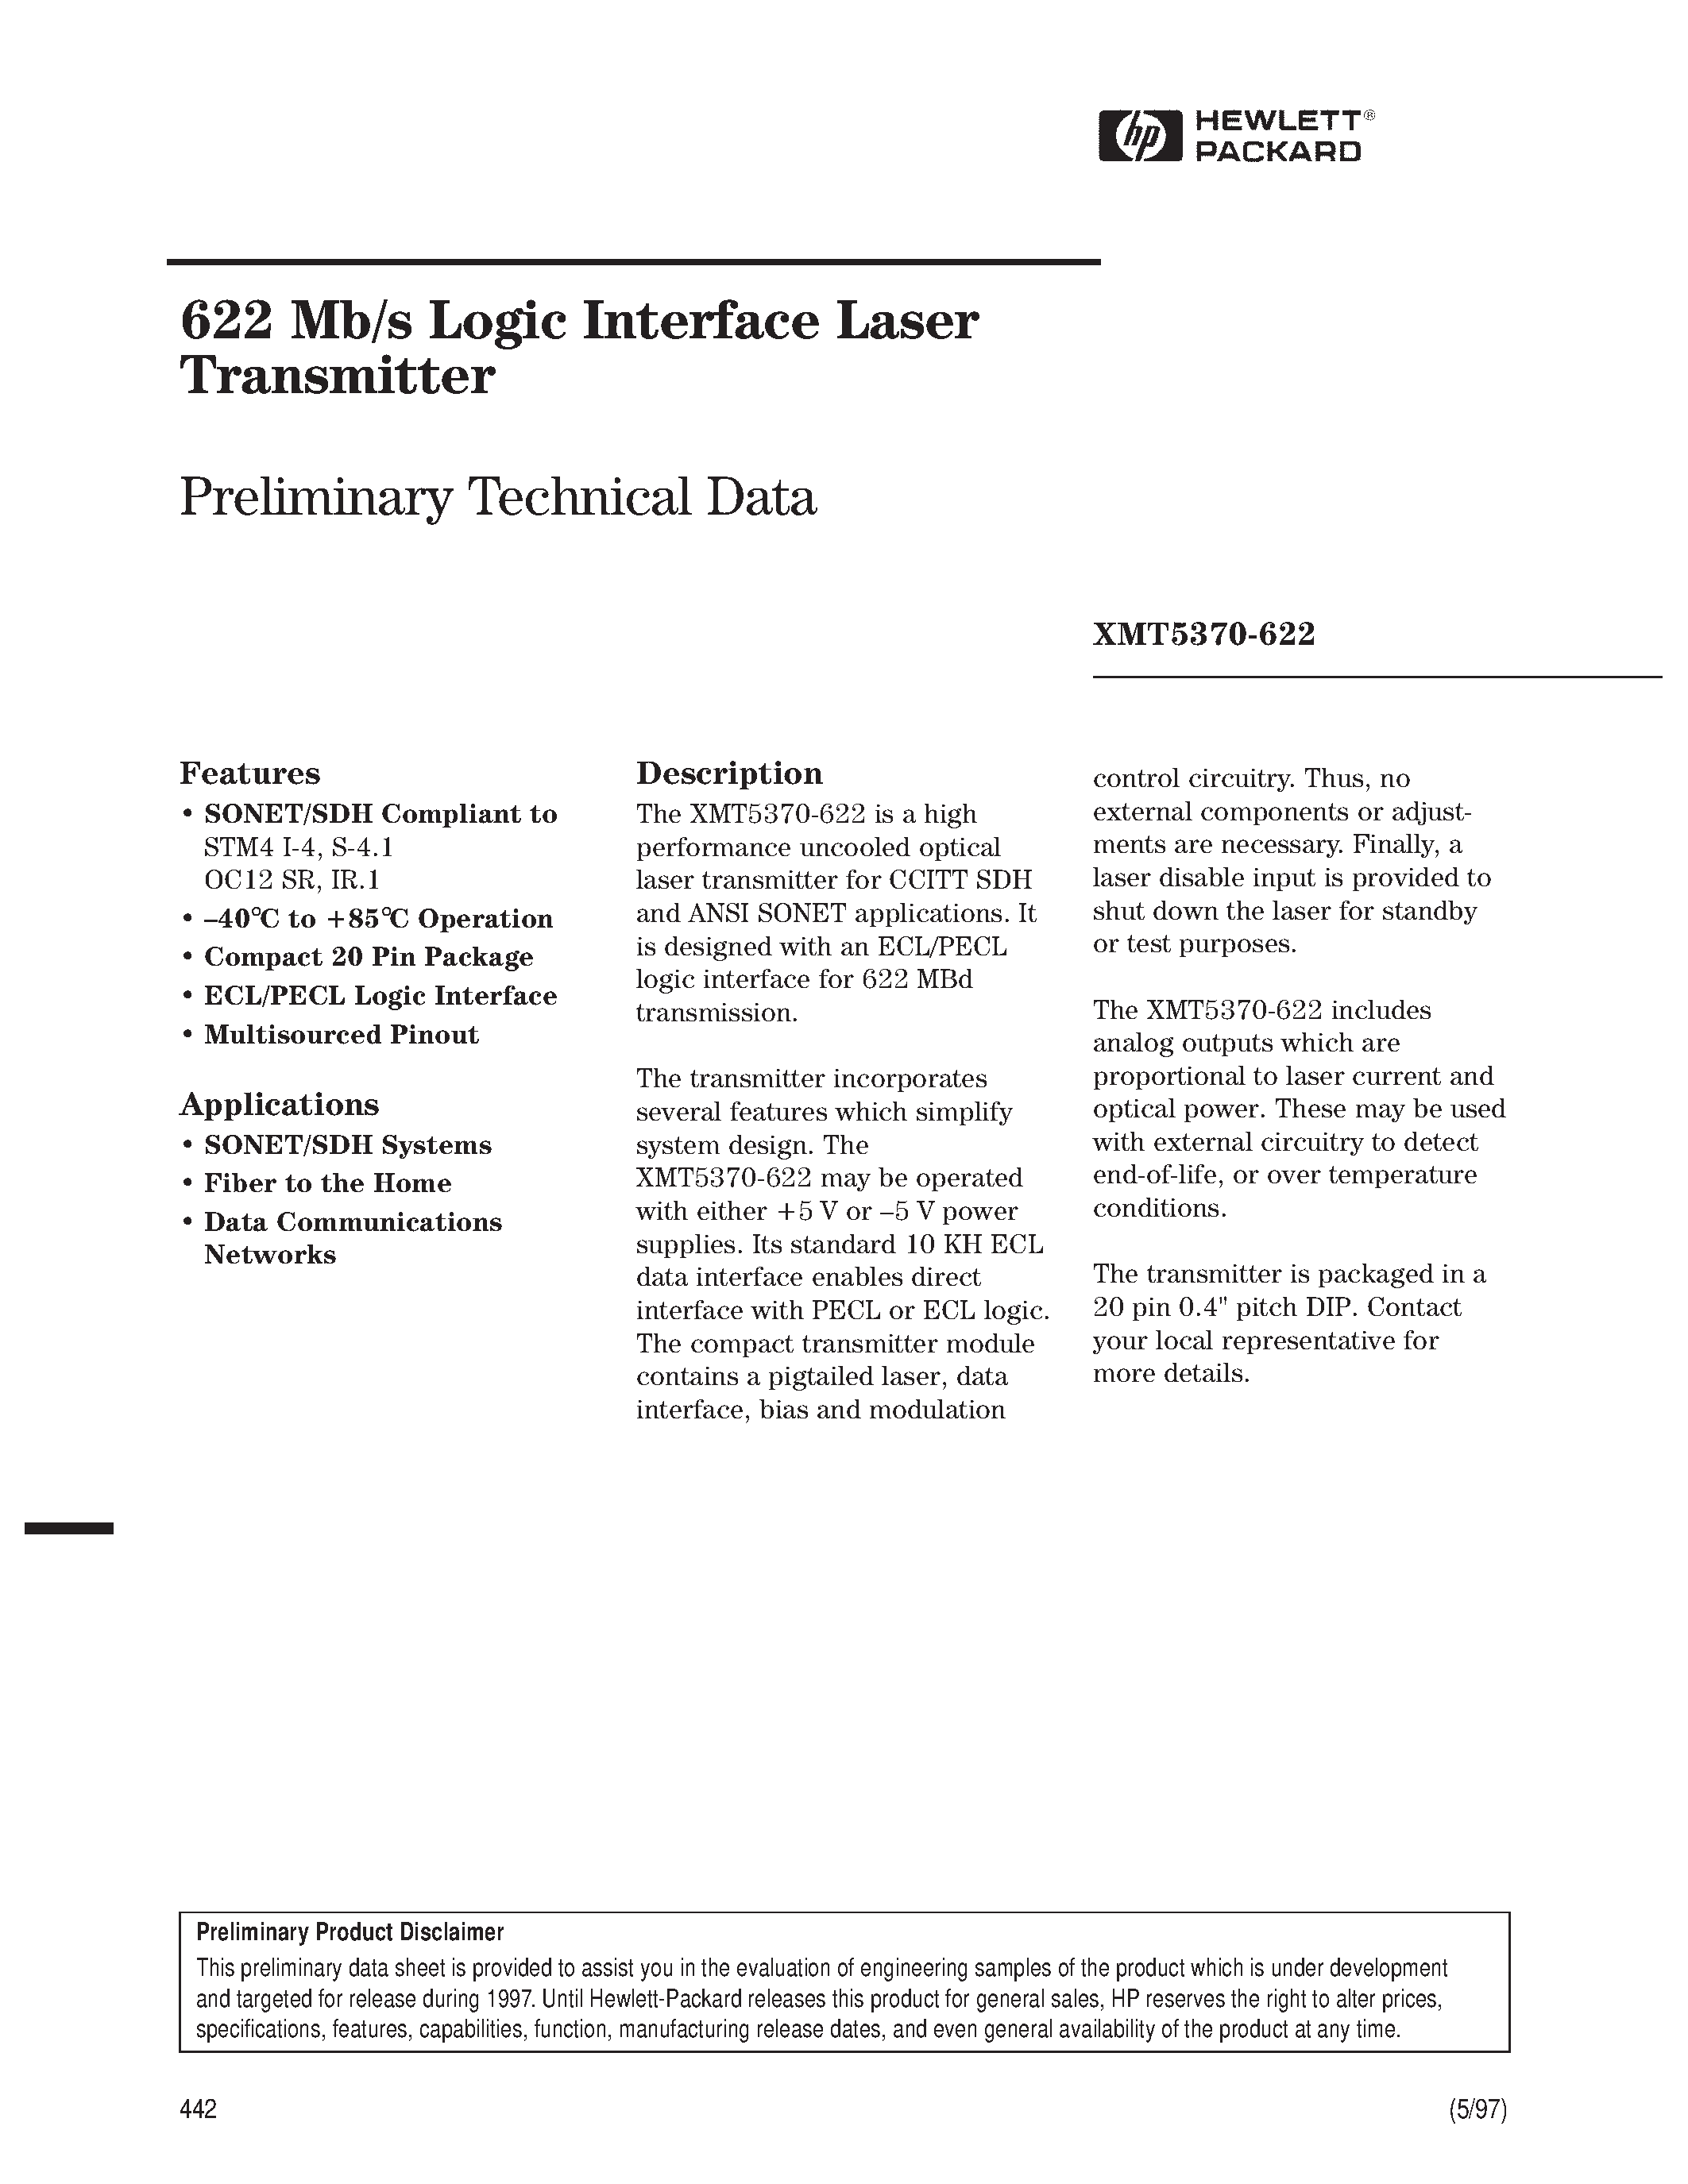 Datasheet XMT5160B-155-FP - 622 Mb/s Logic Interface Laser Transmitter page 1